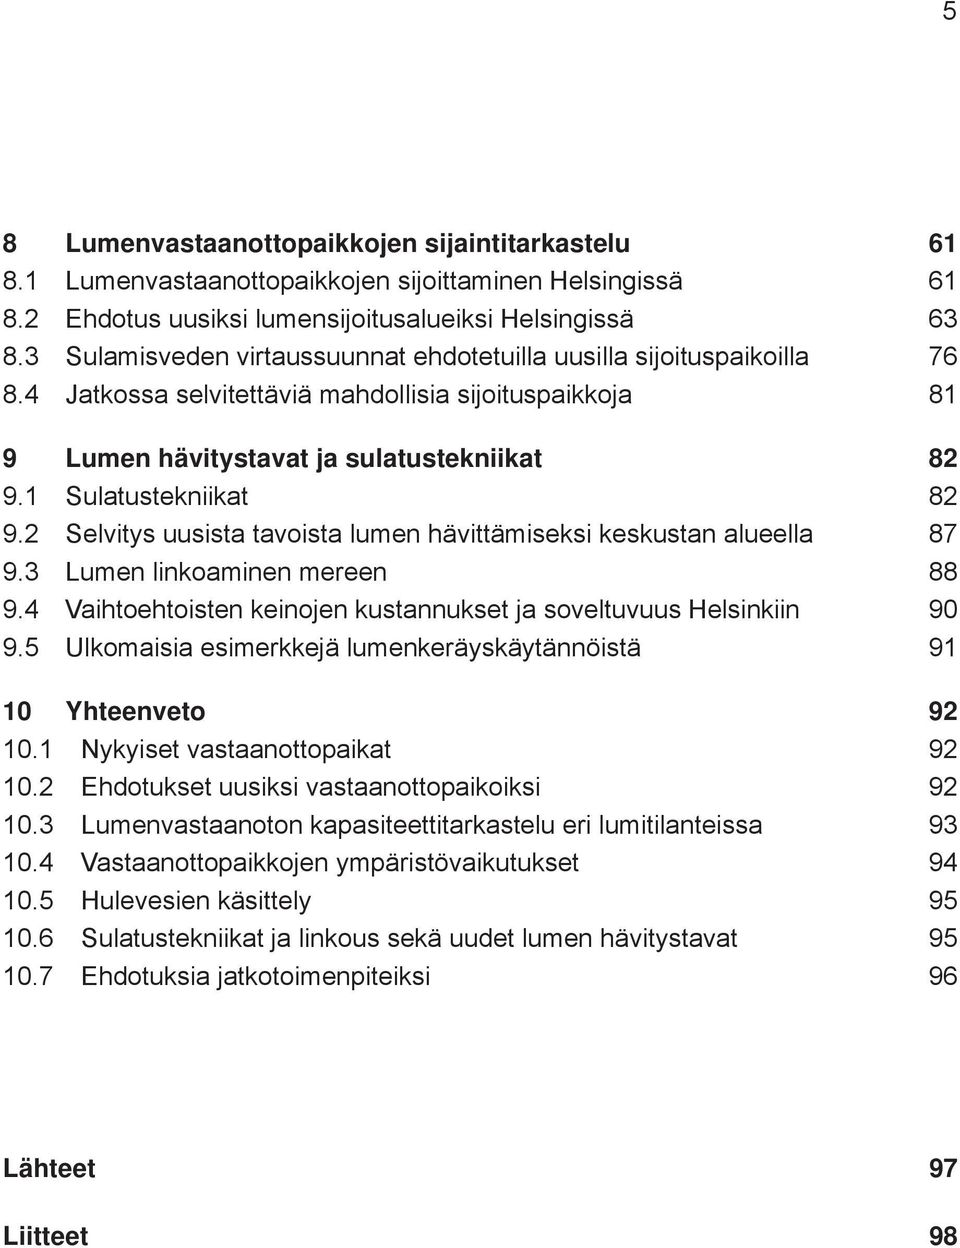 1 Sulatustekniikat 82 9.2 Selvitys uusista tavoista lumen hävittämiseksi keskustan alueella 87 9.3 Lumen linkoaminen mereen 88 9.4 Vaihtoehtoisten keinojen kustannukset ja soveltuvuus Helsinkiin 90 9.